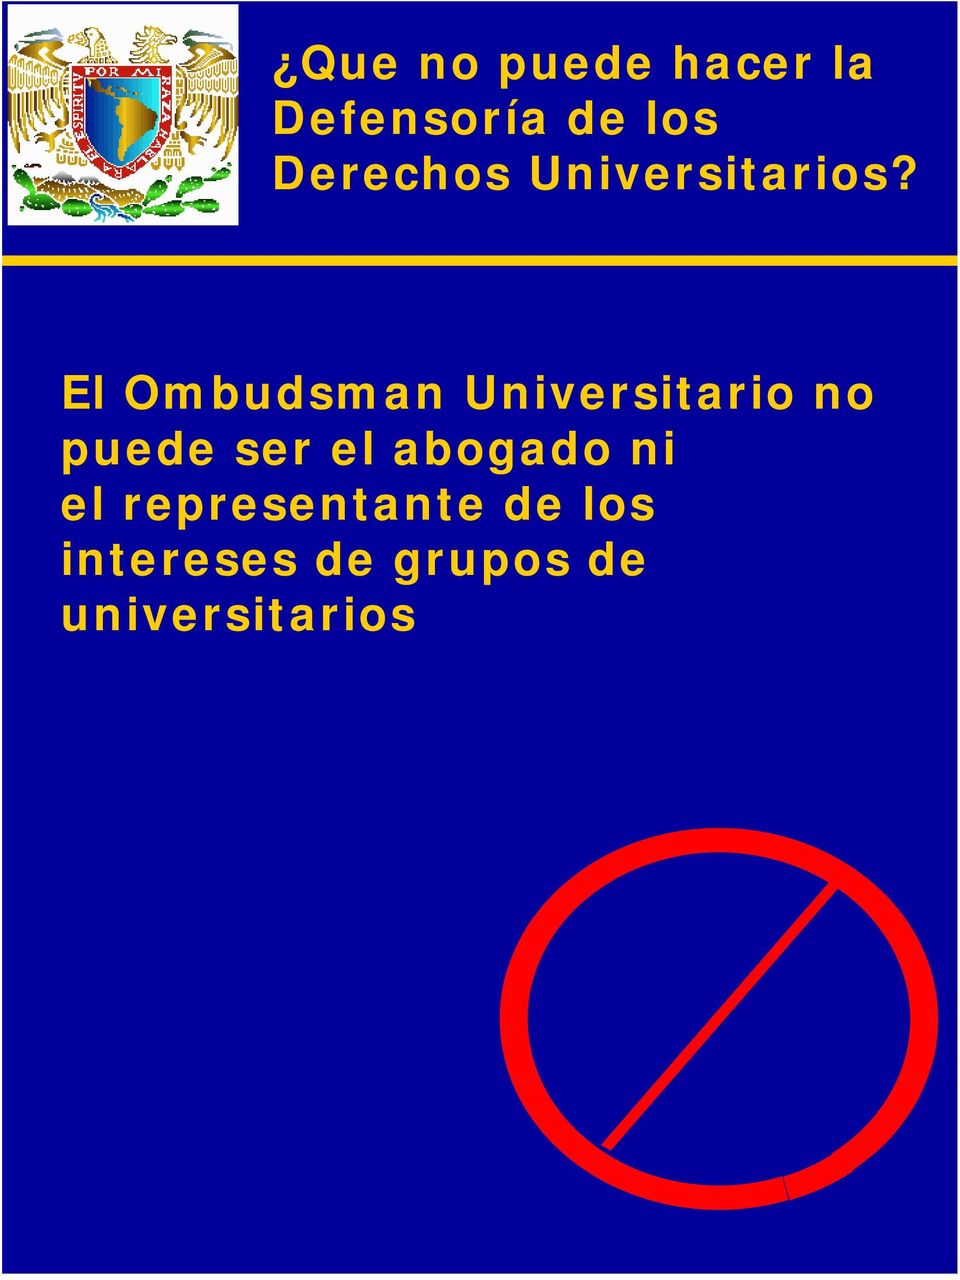 El Ombudsman Universitario no puede ser el